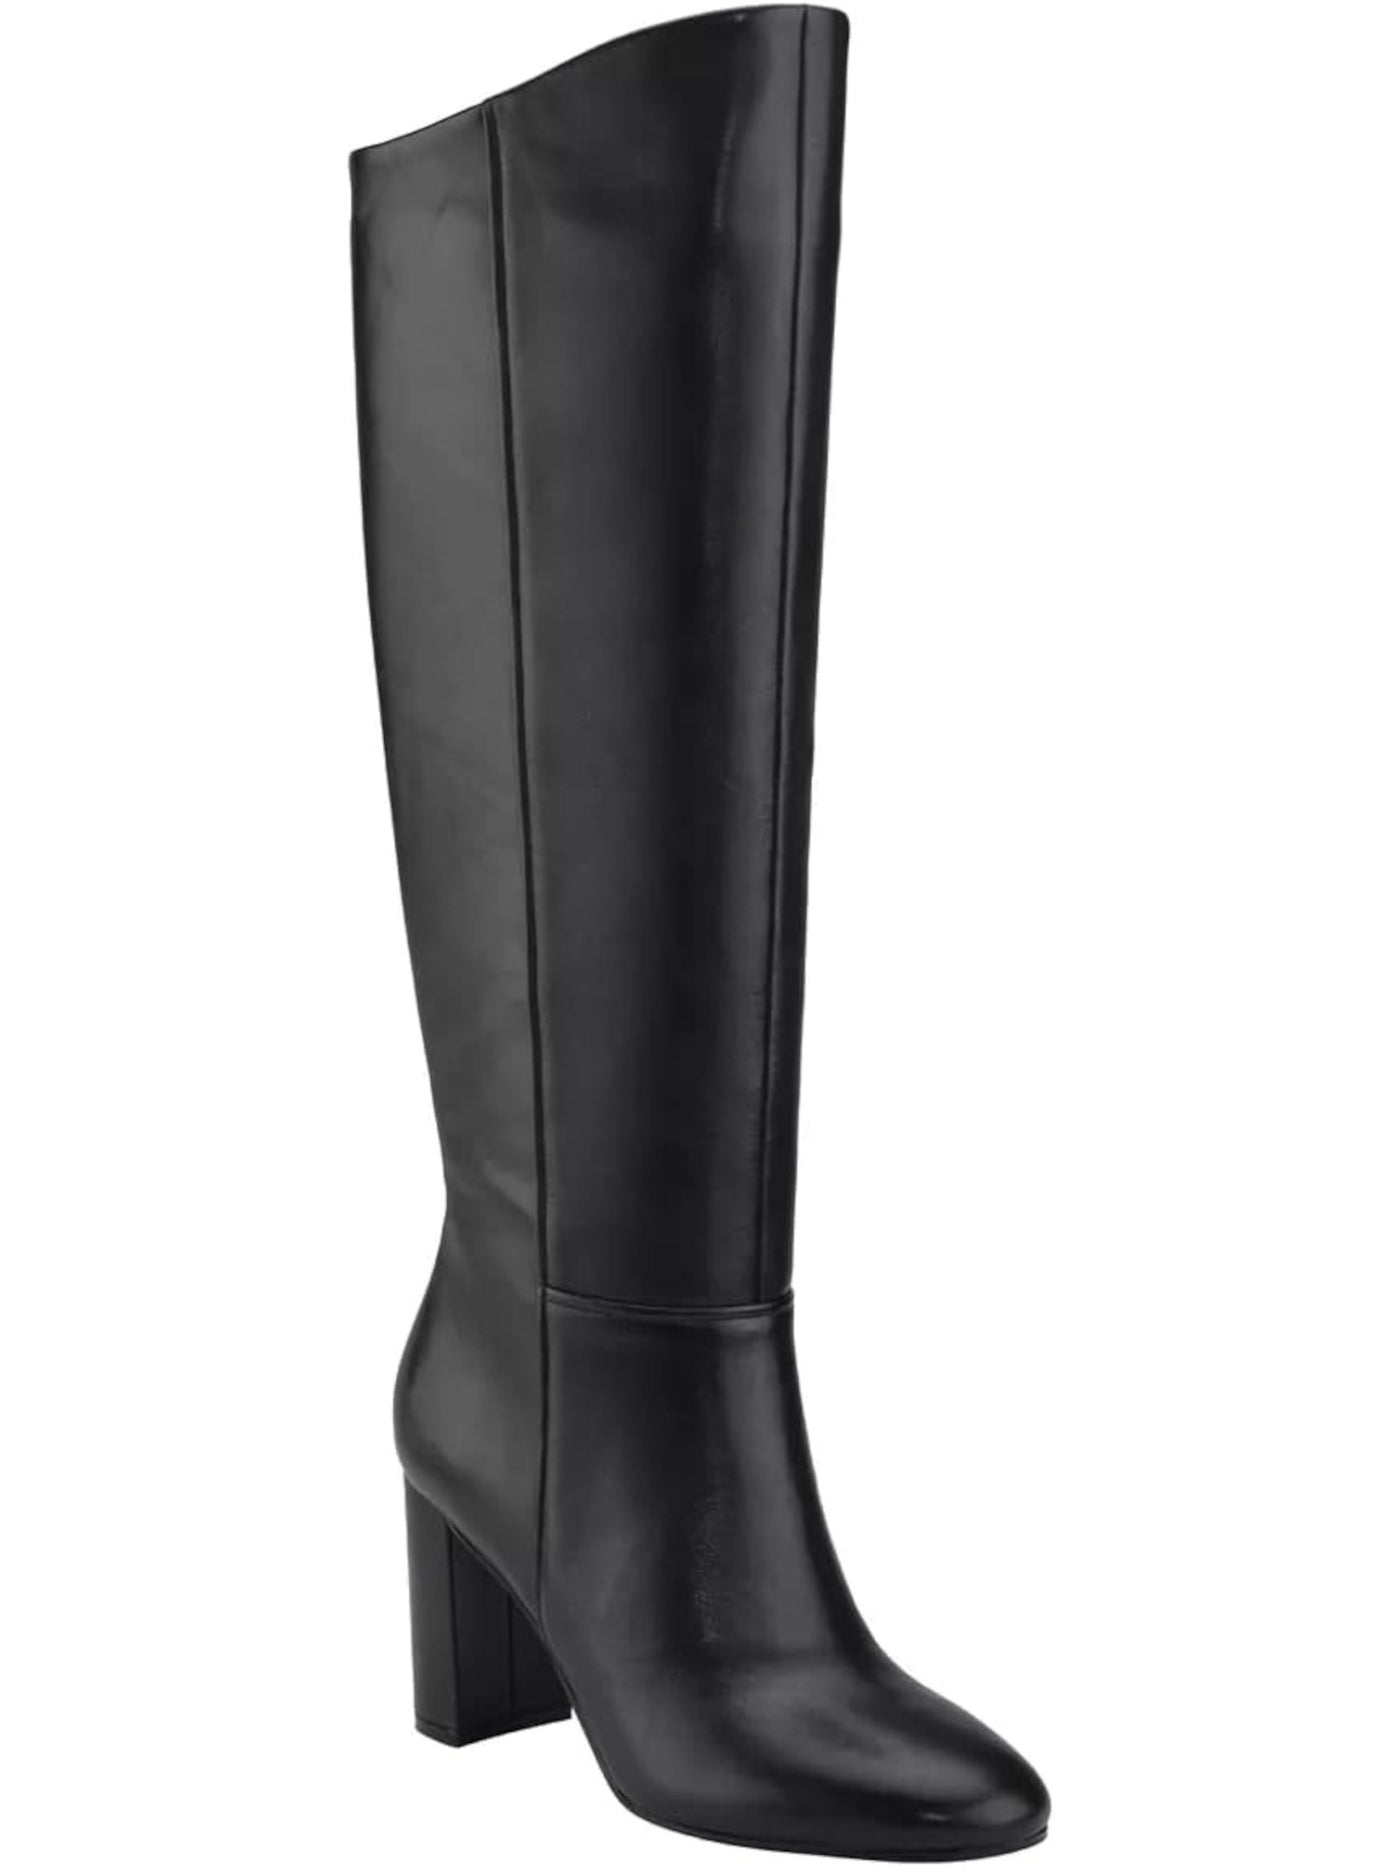 CALVIN KLEIN Womens Black Comfort Almay Round Toe Block Heel Zip-Up Leather Dress Boots 7 M